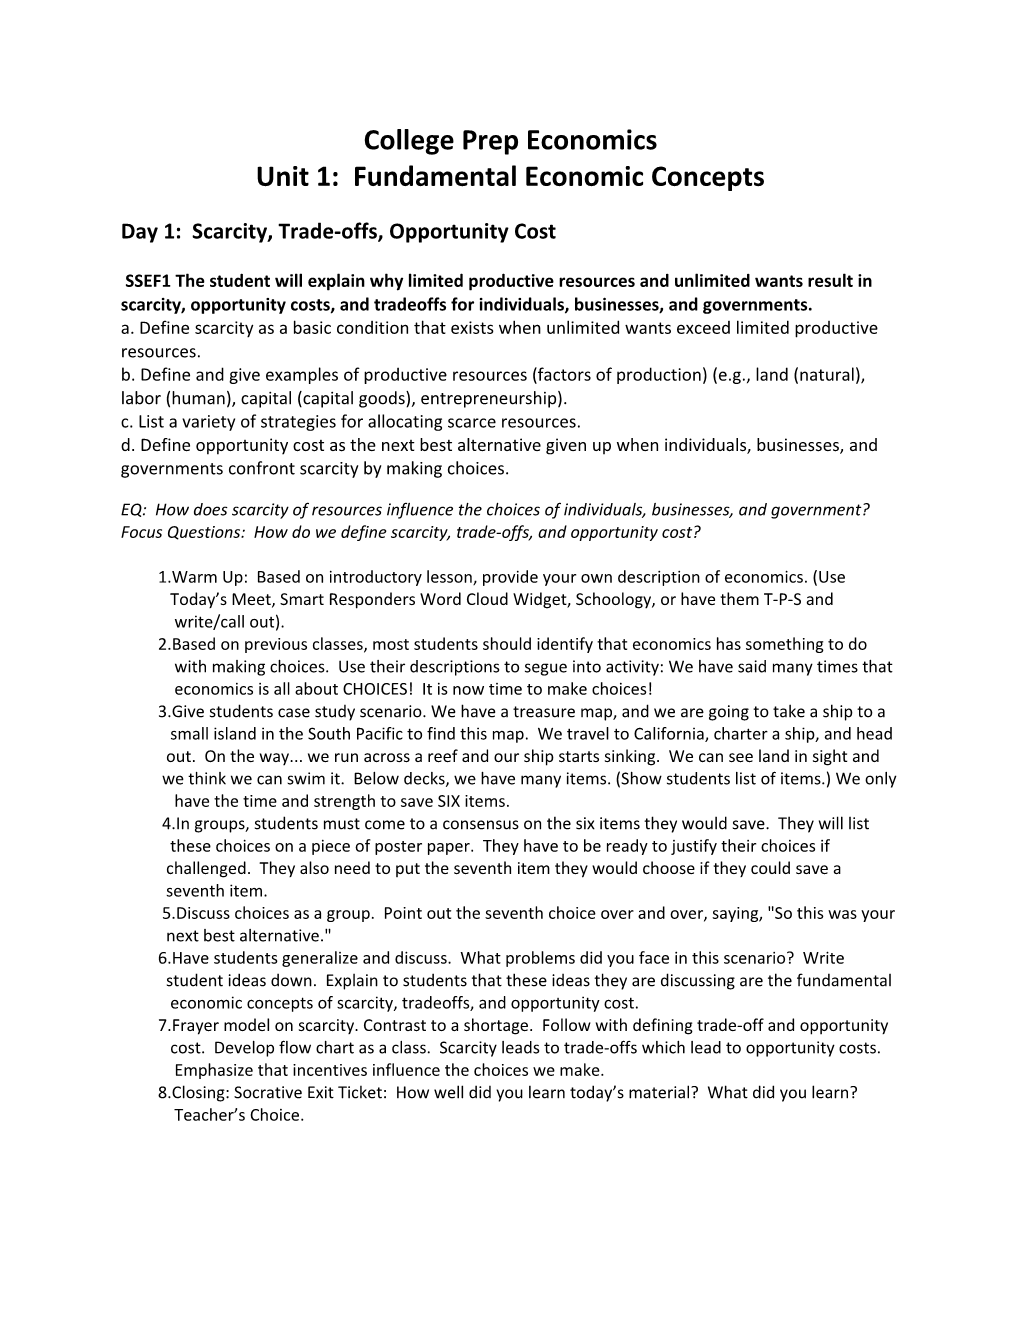 Unit 1: Fundamental Economic Concepts